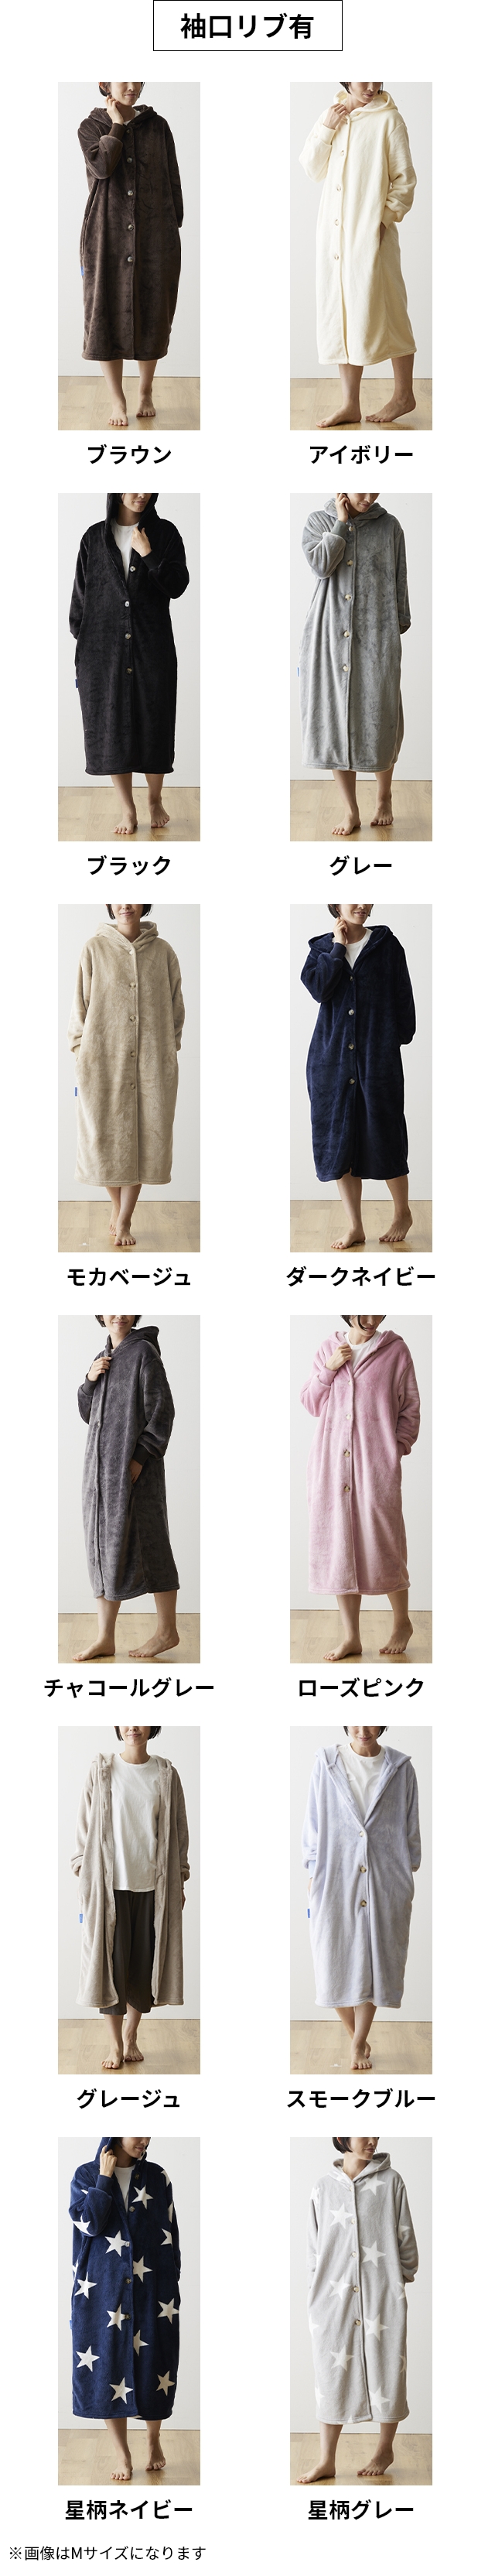 mofua (モフア) プレミアムマイクロファイバー着る毛布 フード付 L 着丈約125cm